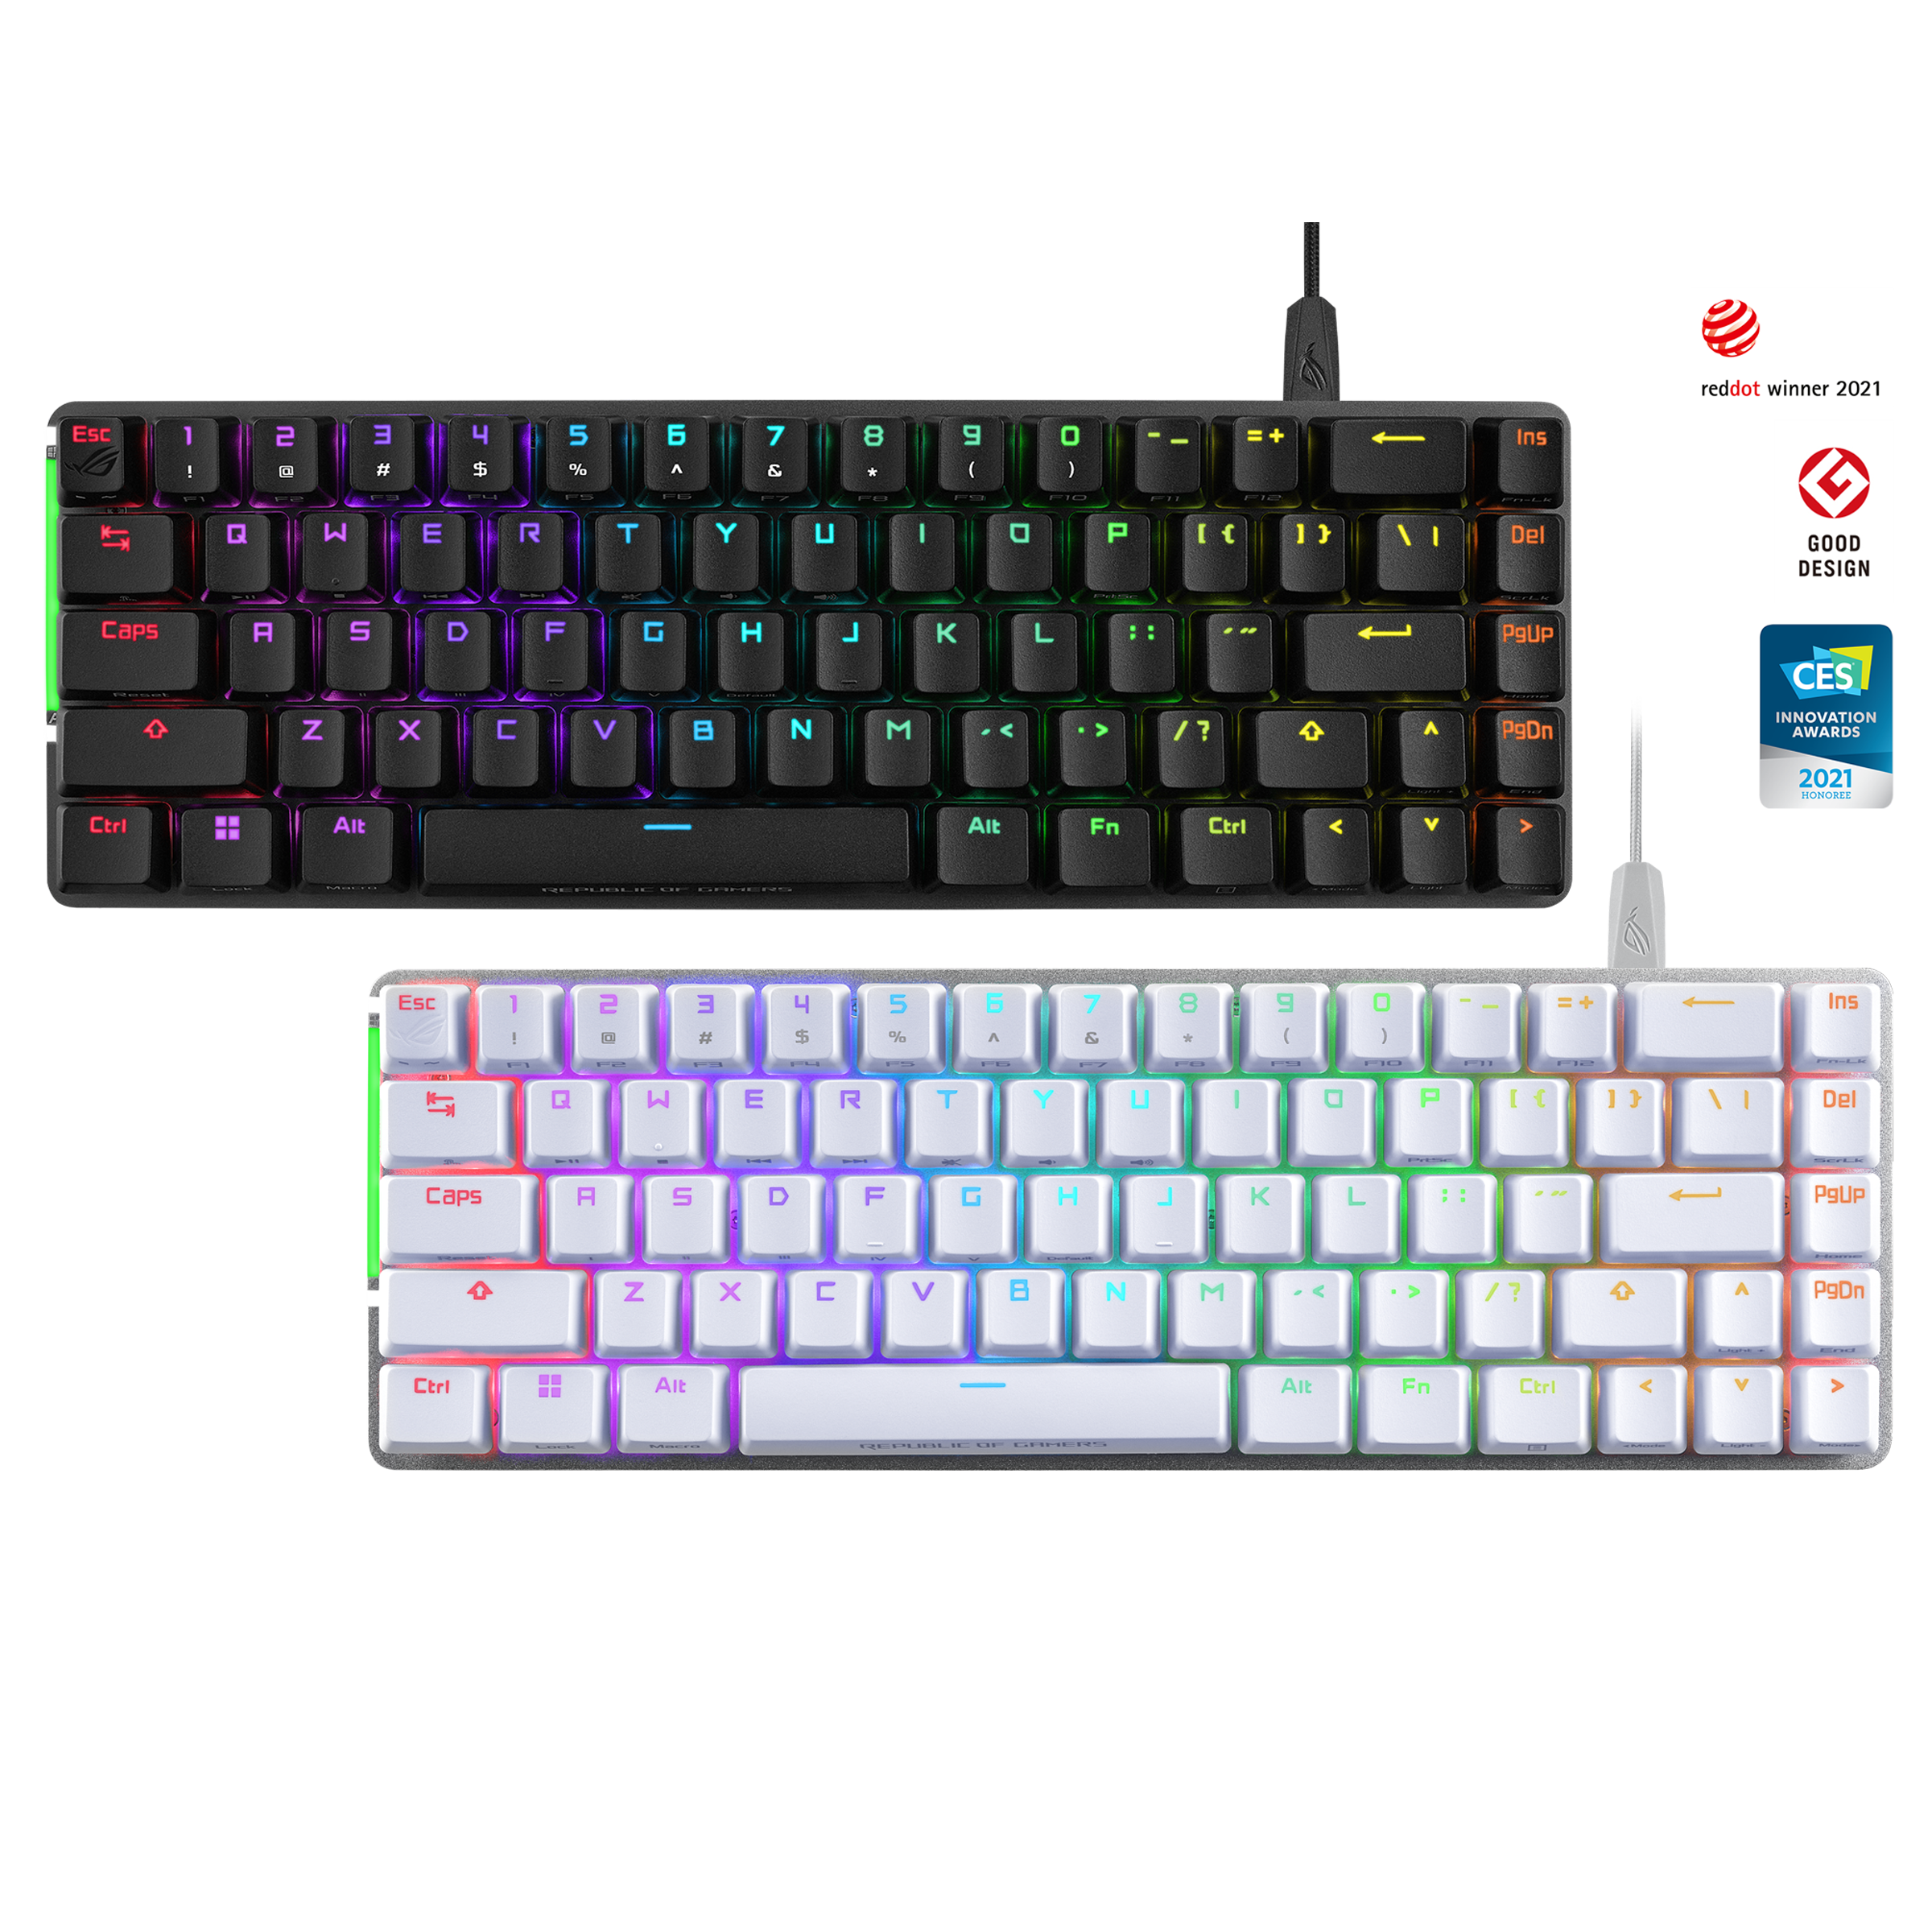 Best Colorful, Cute Keyboards Trending on TikTok, 2023